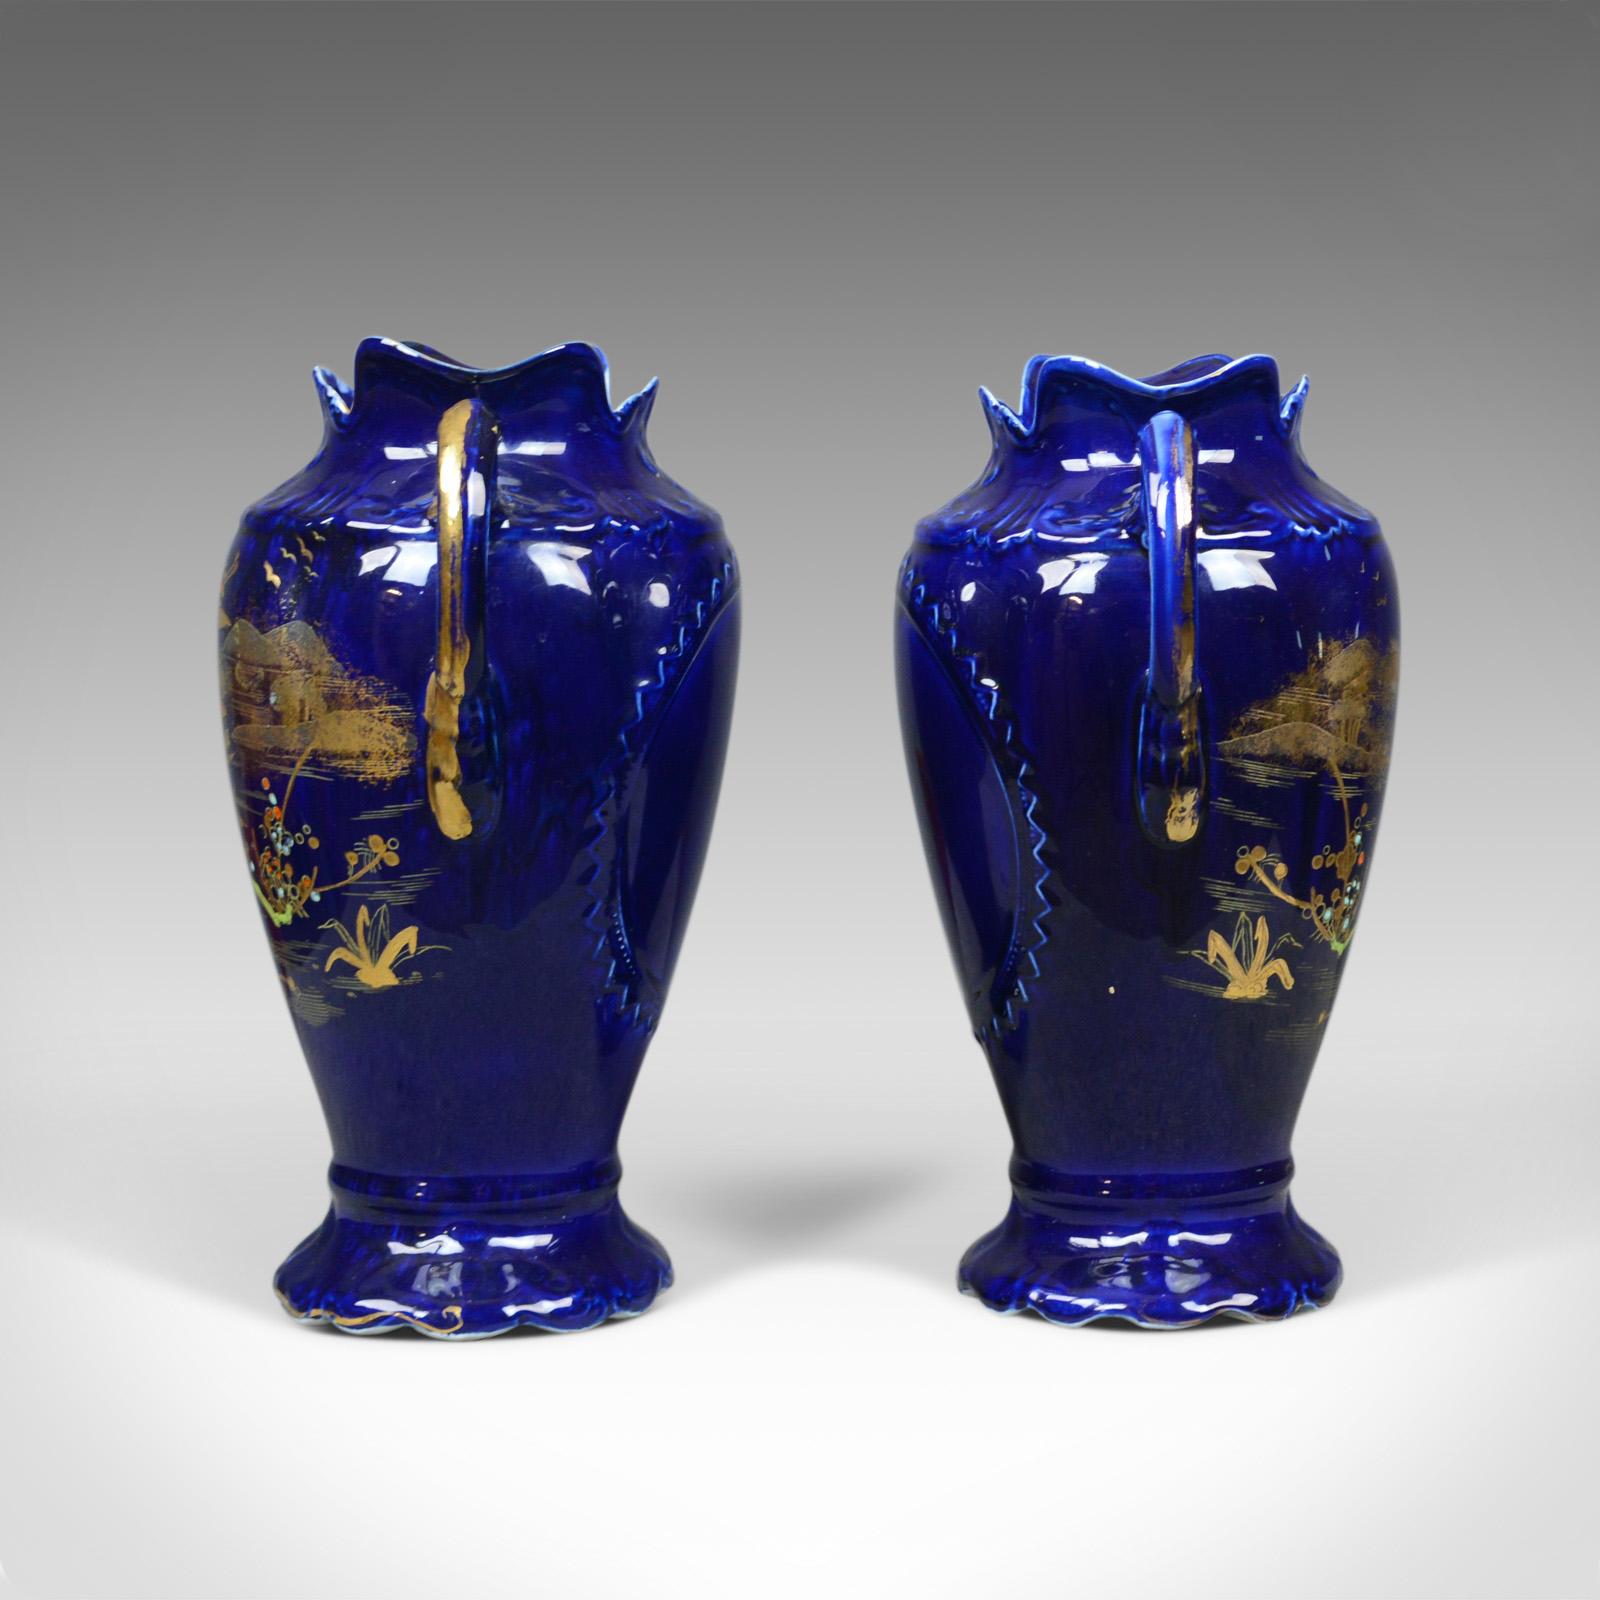 Il s'agit d'une paire de vases balustres décoratifs, des urnes en céramique de couleur or et bleue, estampillés England à la base, fin du 20e siècle.

Imposante paire de vases en céramique de qualité 
Profondément décoré en or sur un fond bleu